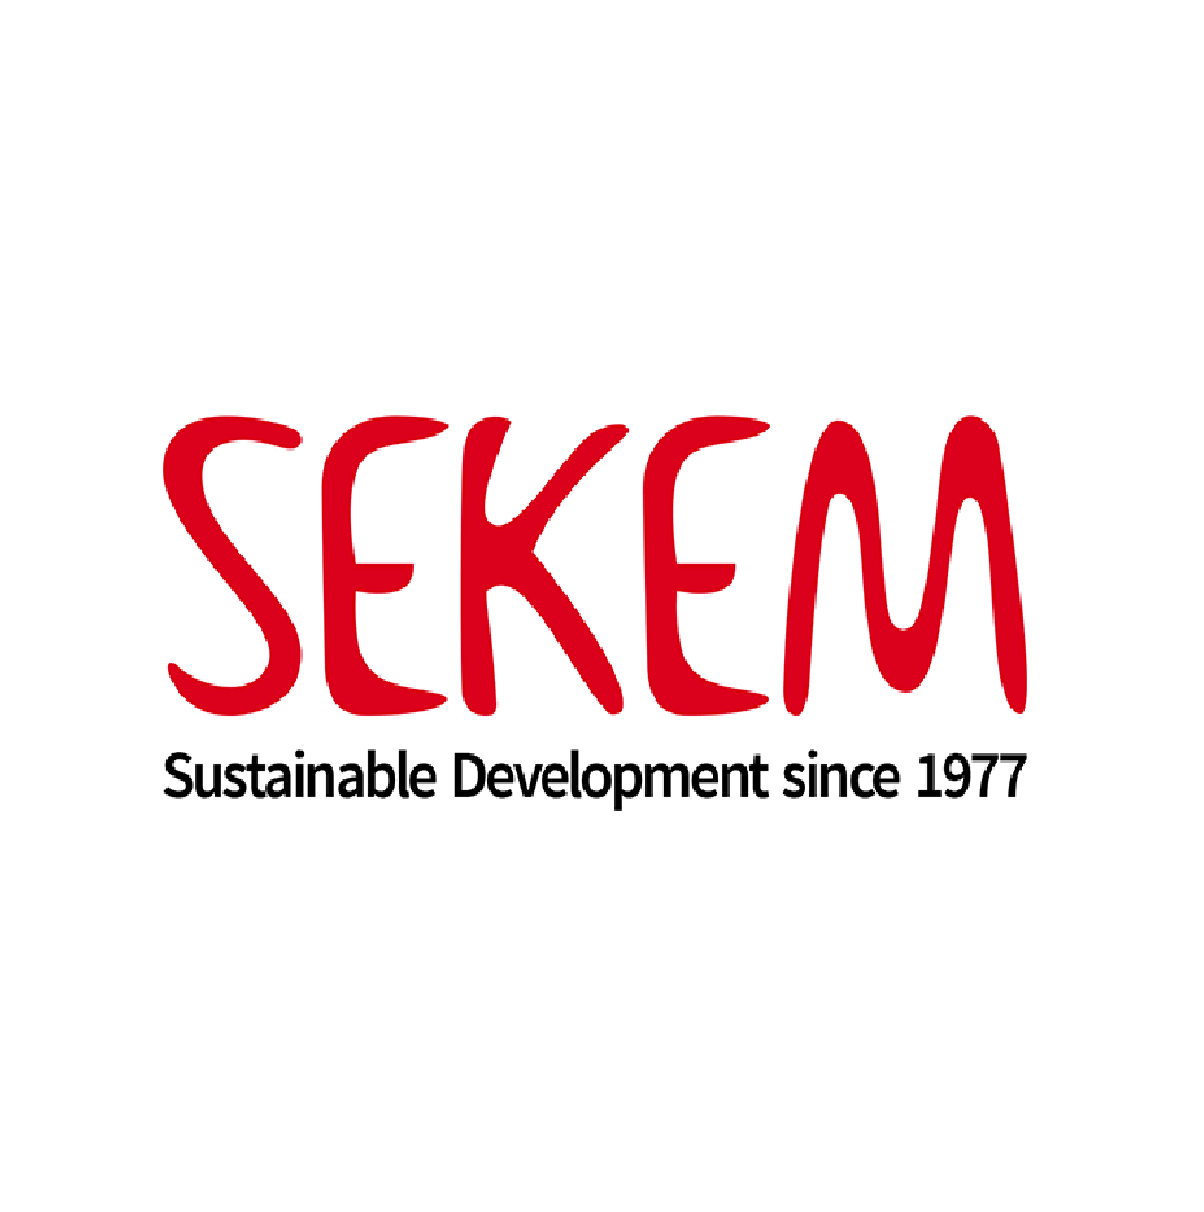 SEKEM company